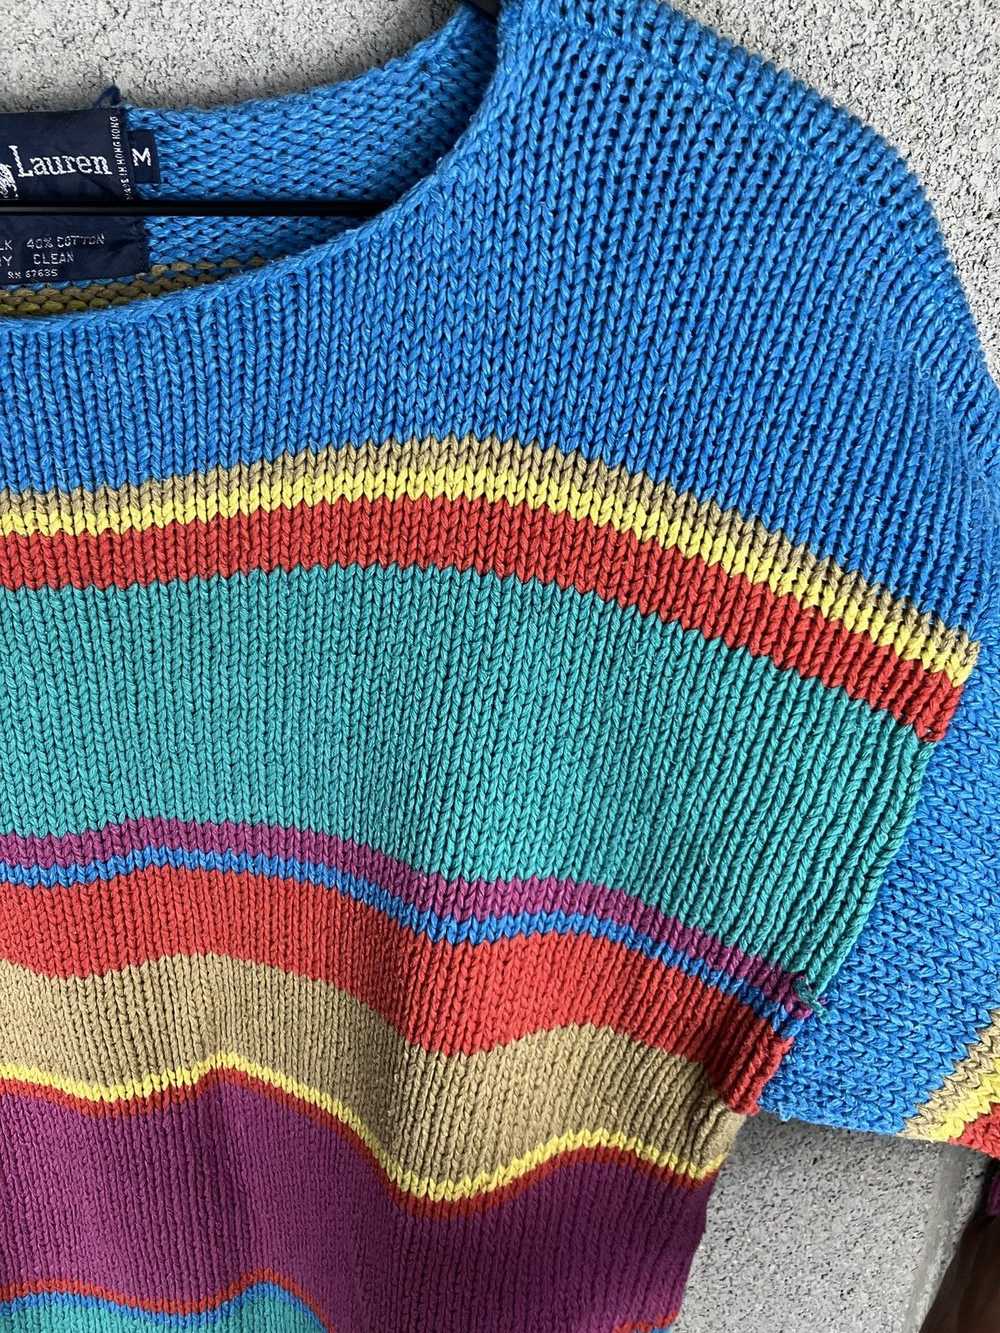 Coloured Cable Knit Sweater × Ralph Lauren × Vint… - image 4